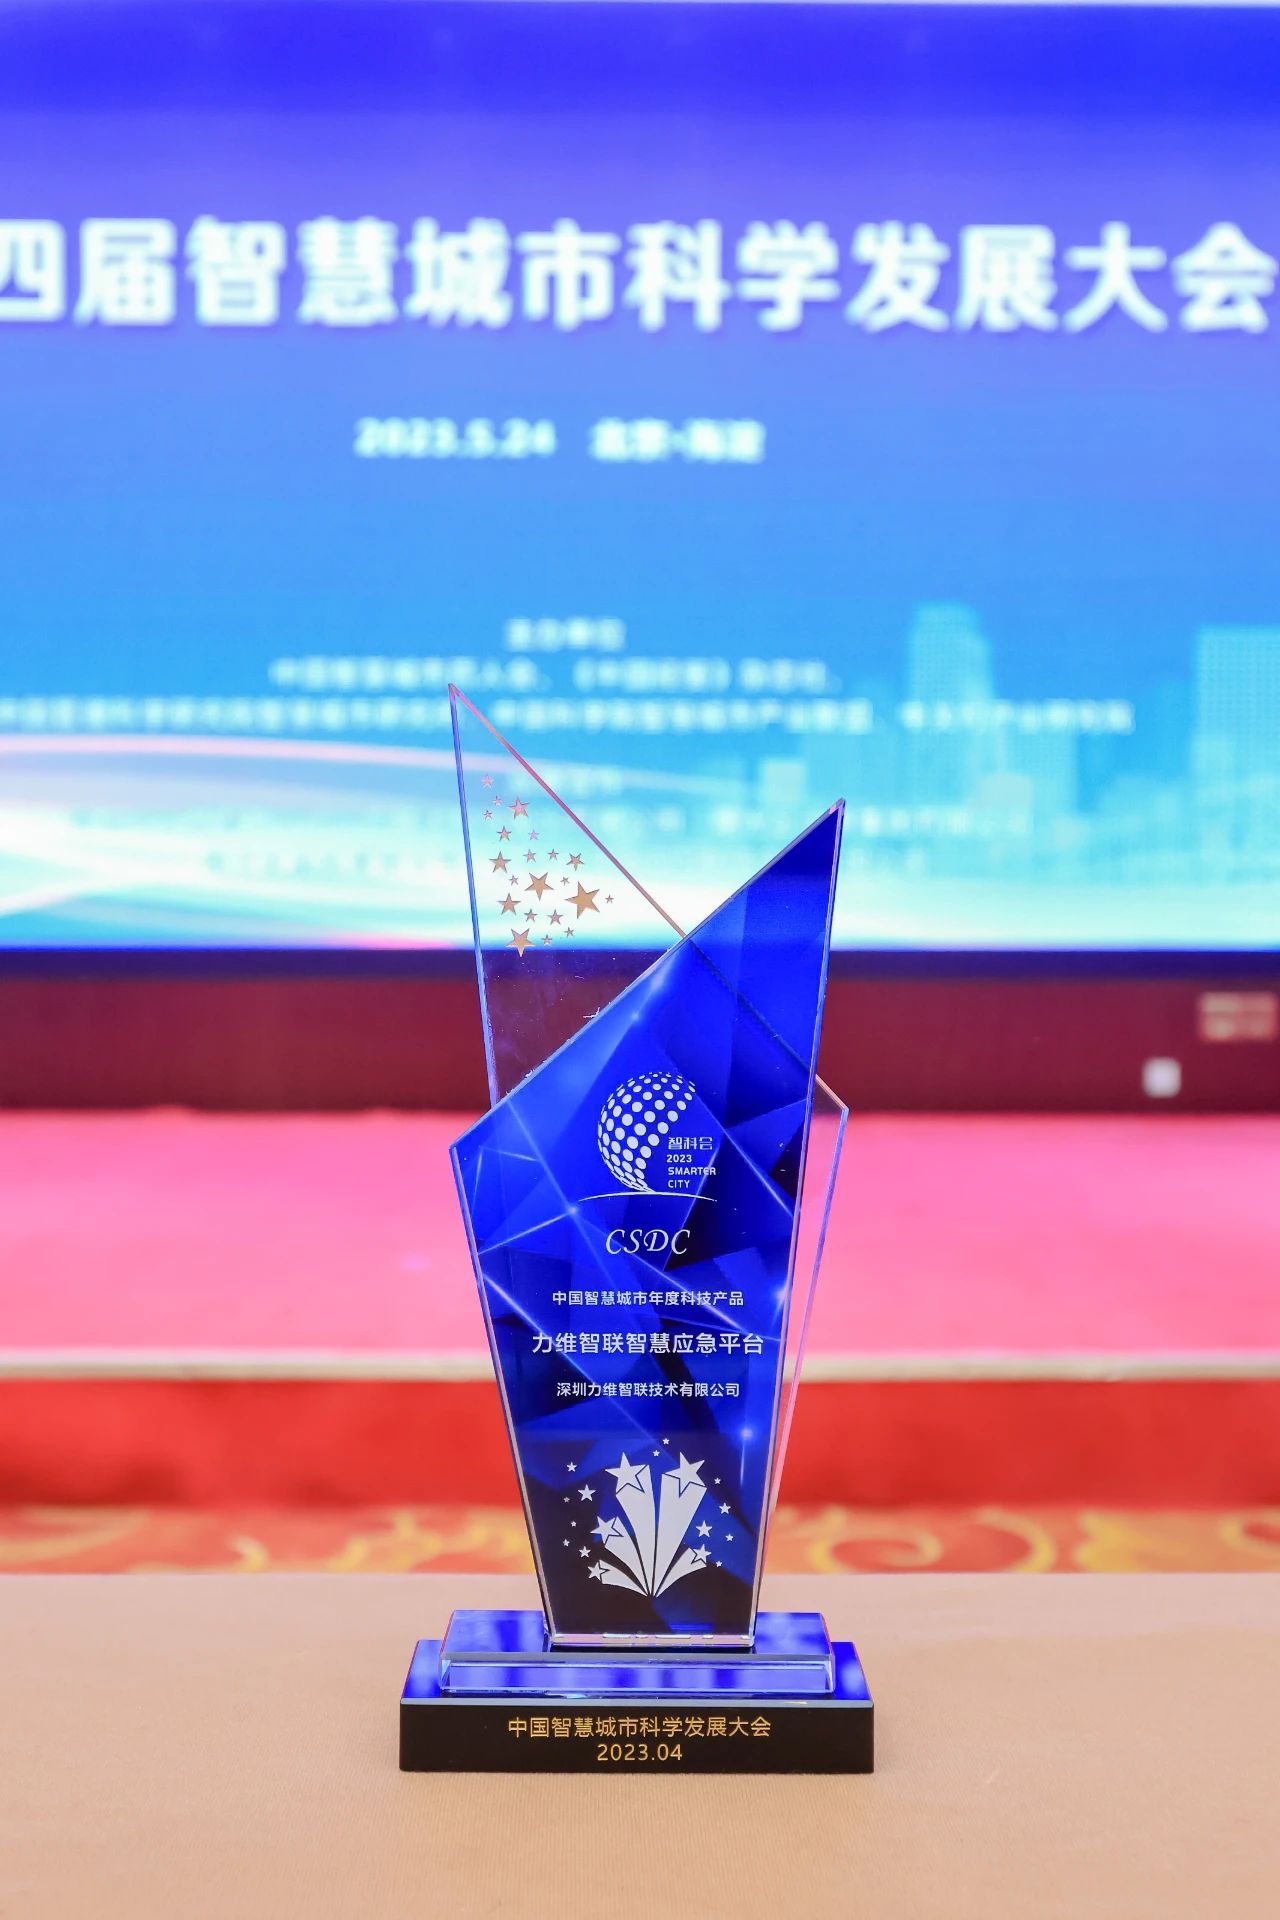 业界荣誉 | yd2333云顶电子游戏智慧应急系统荣膺“中国智慧城市年度科技产品”